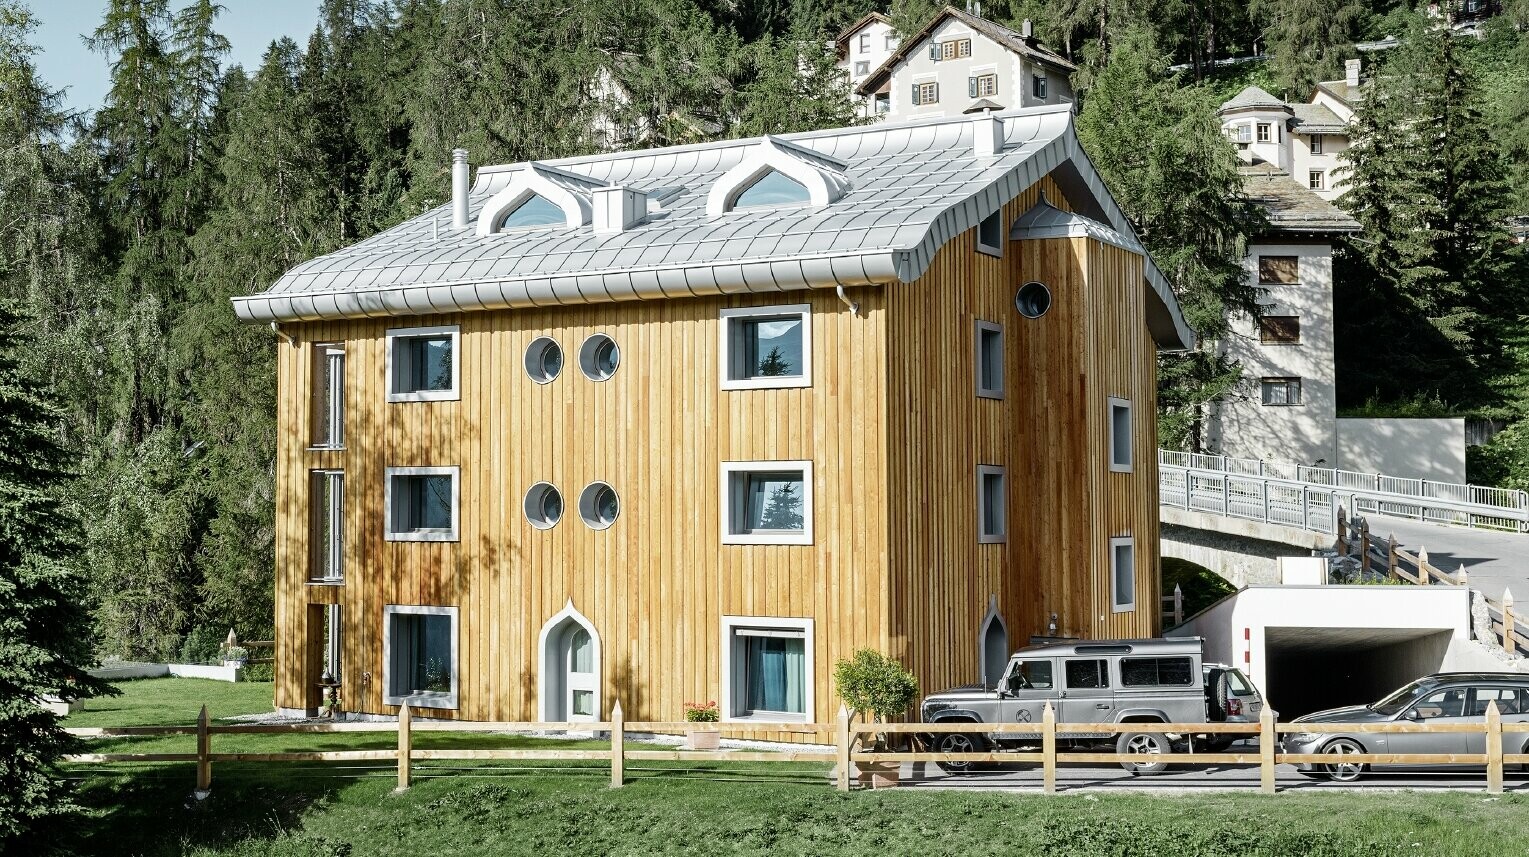 Meergezinswoning in Sankt Moritz (Zwitserland) met houten gevel en aluminiumdak met gekromde dakrand in zilver metallic